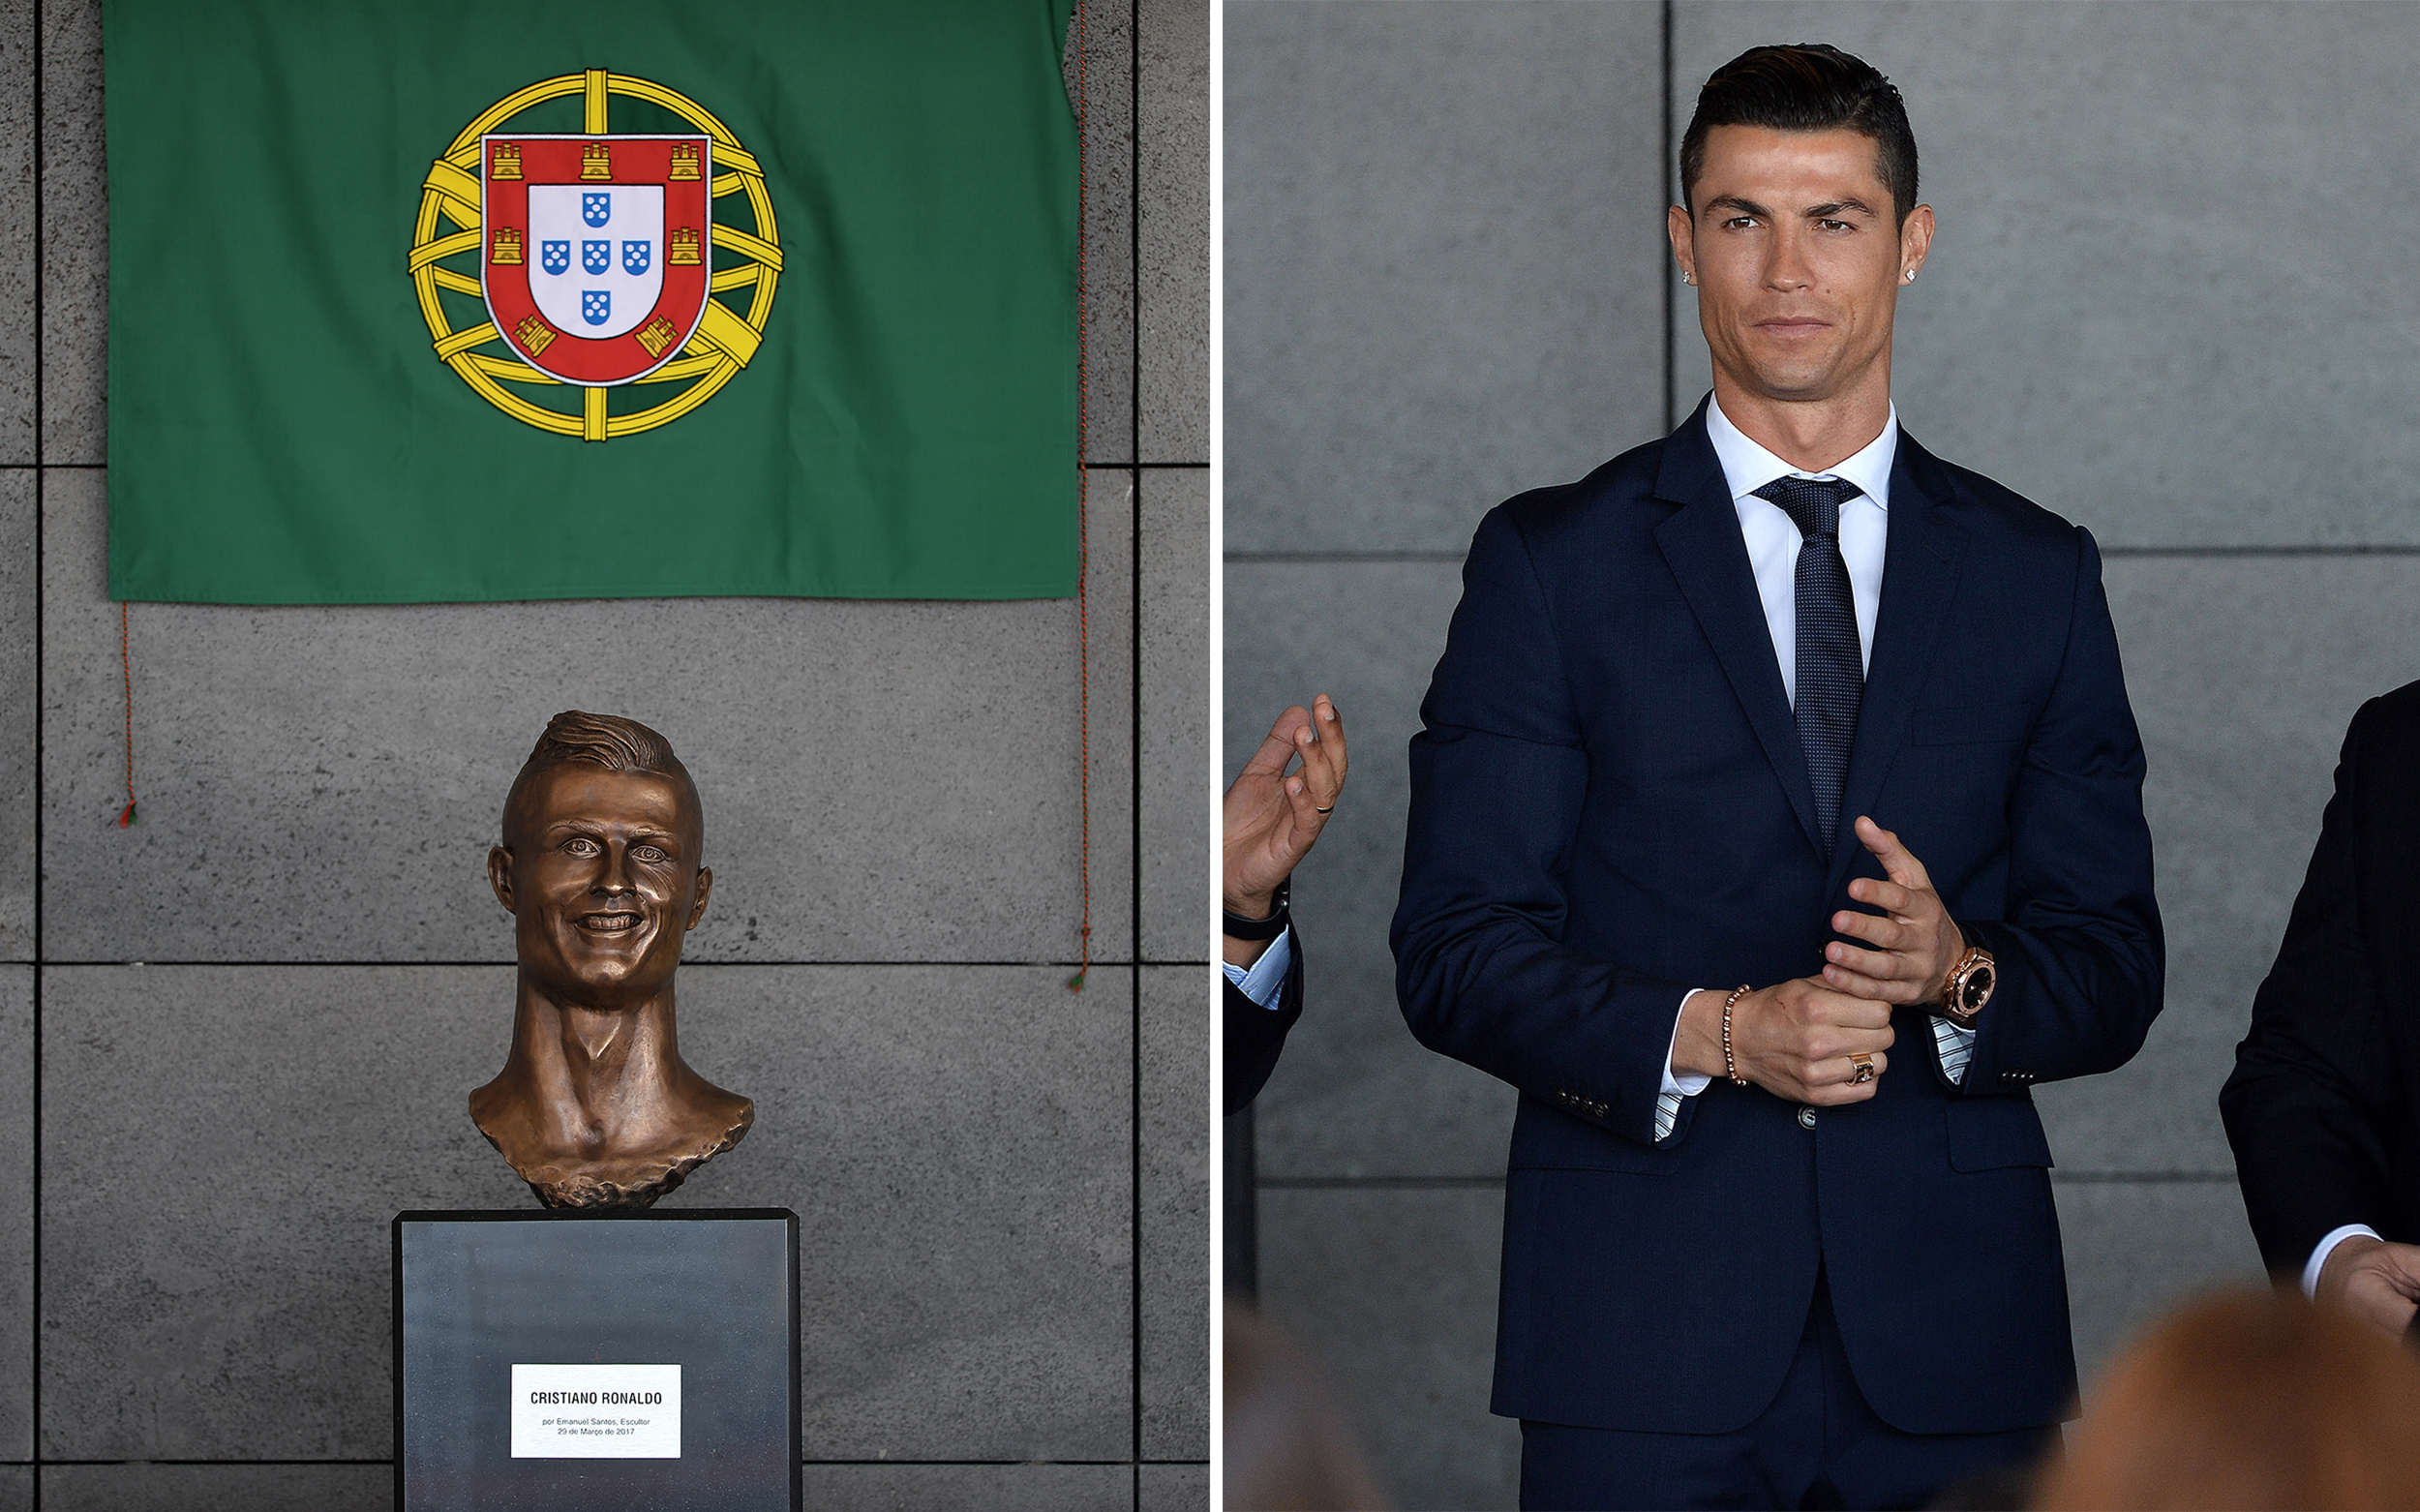 Cristiano Ronaldo Gets New Bronze Statue